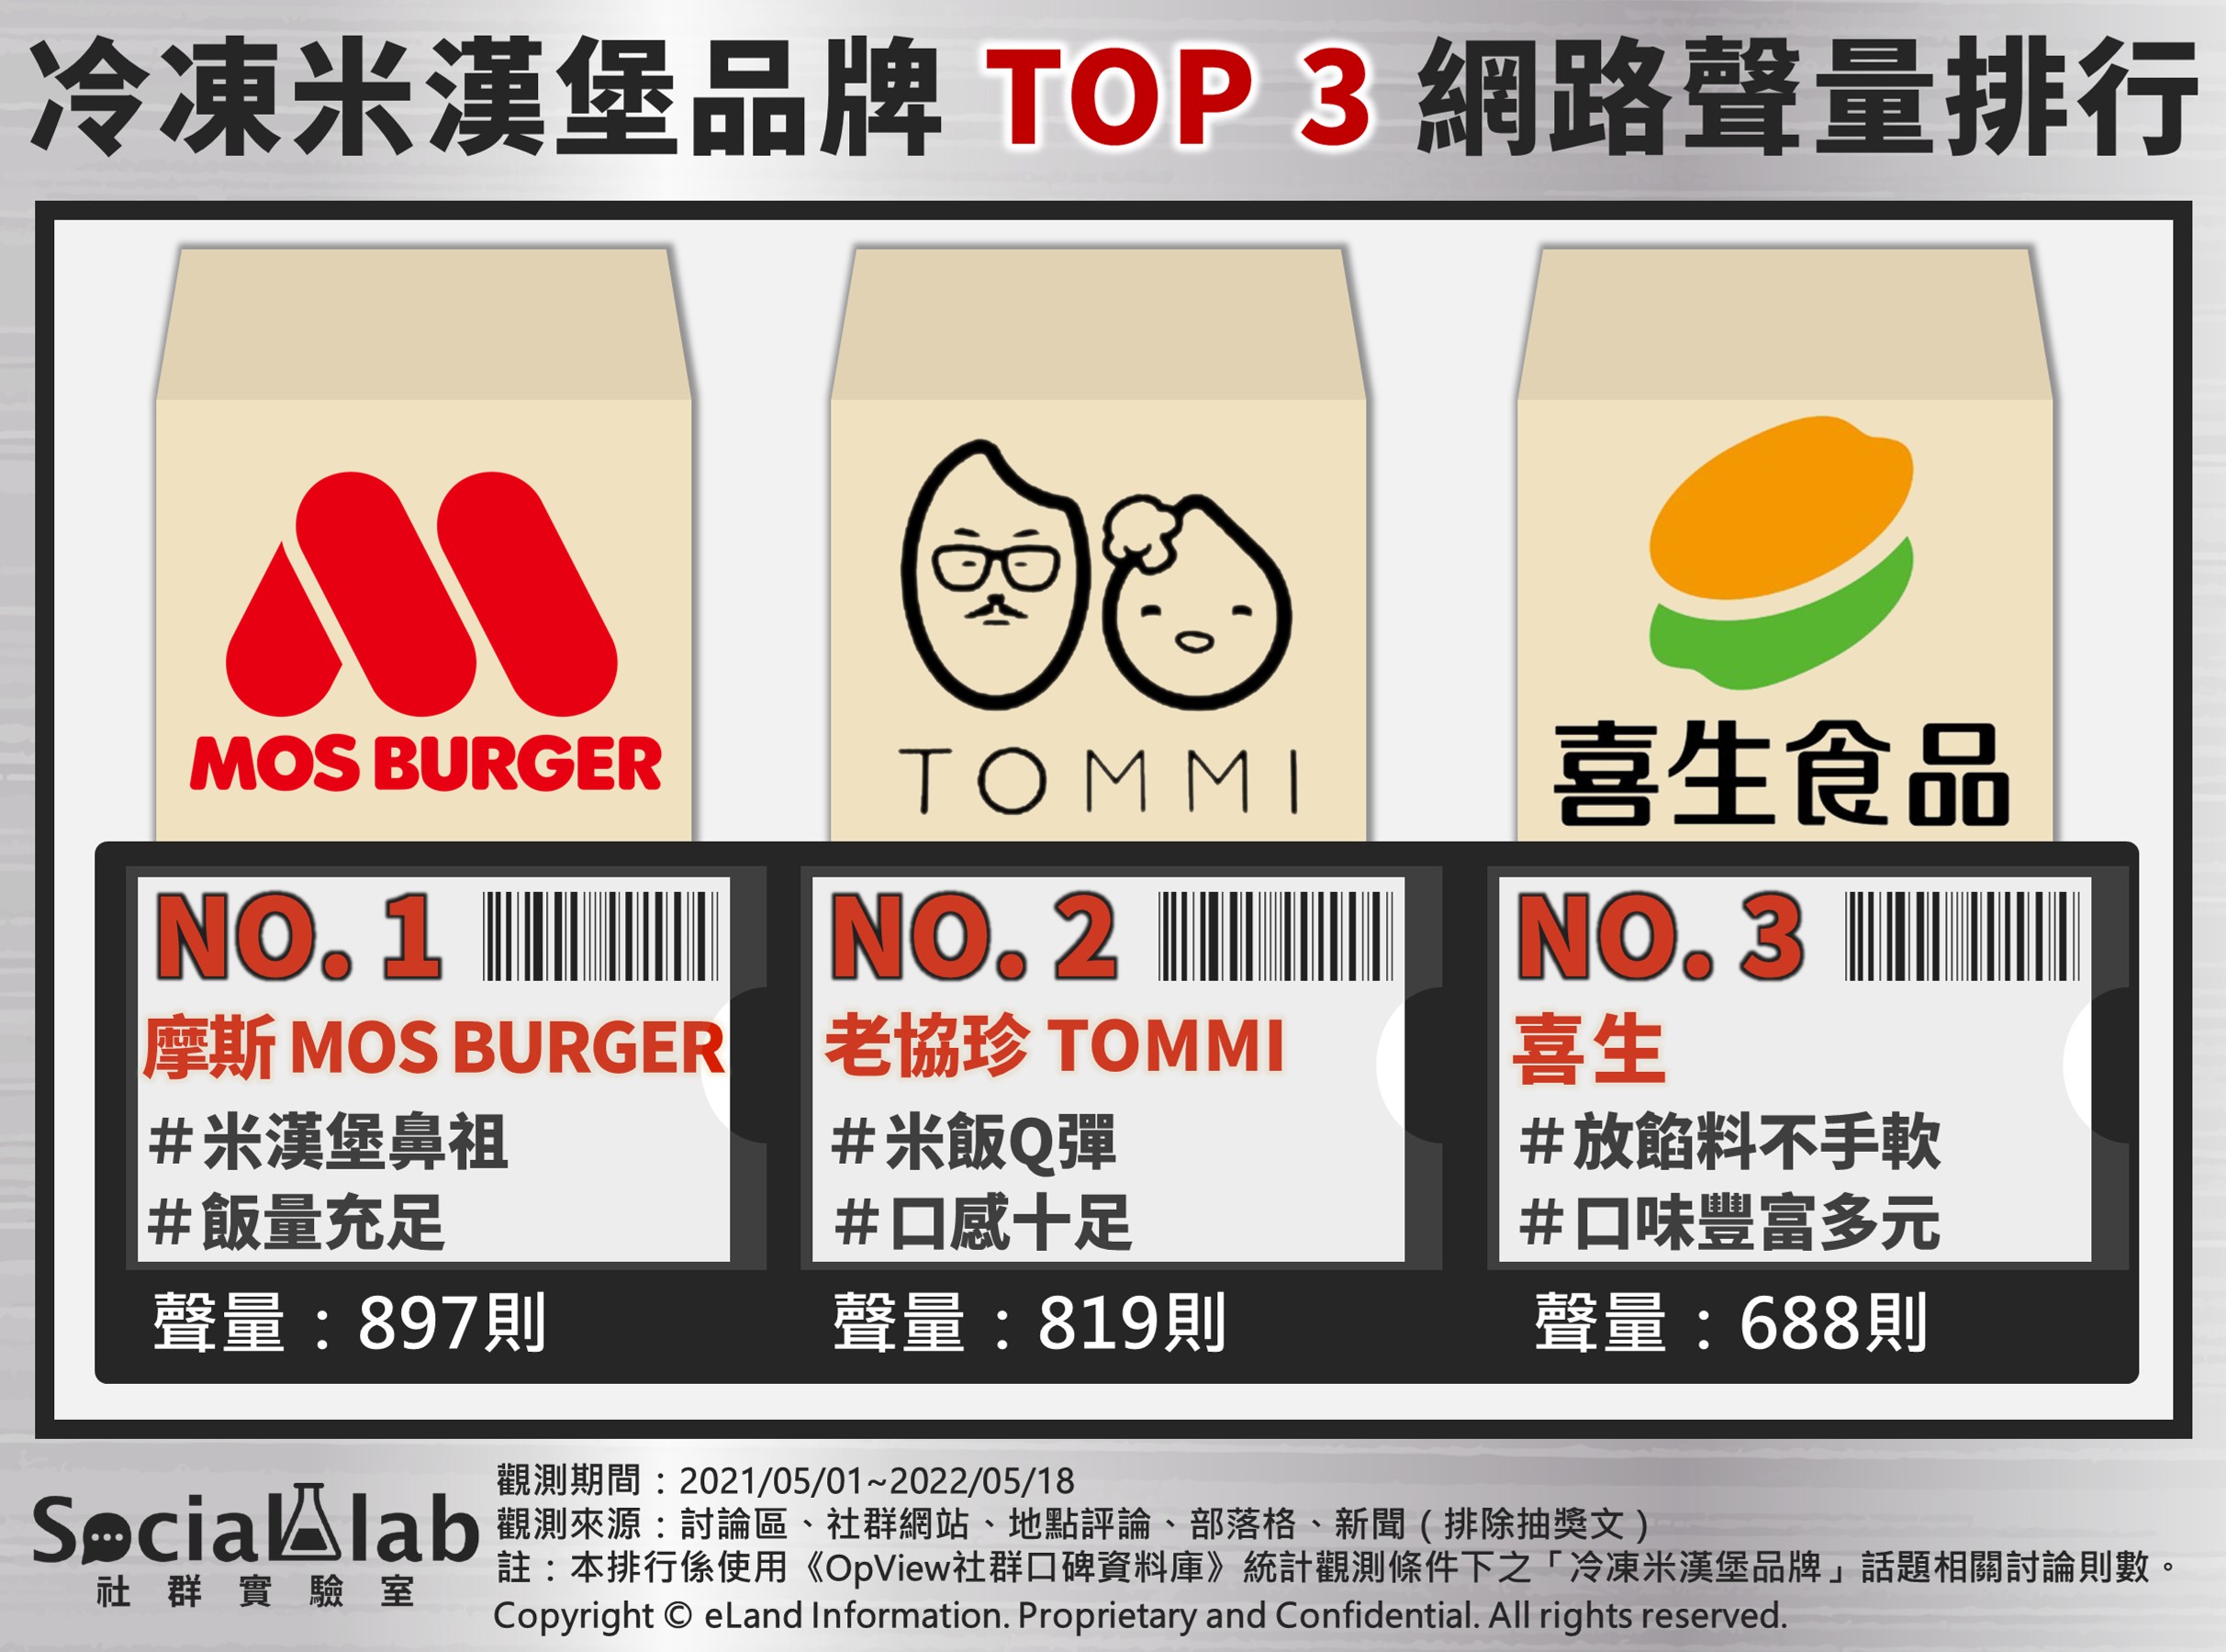 冷凍米漢堡品牌 TOP3網路聲量排行